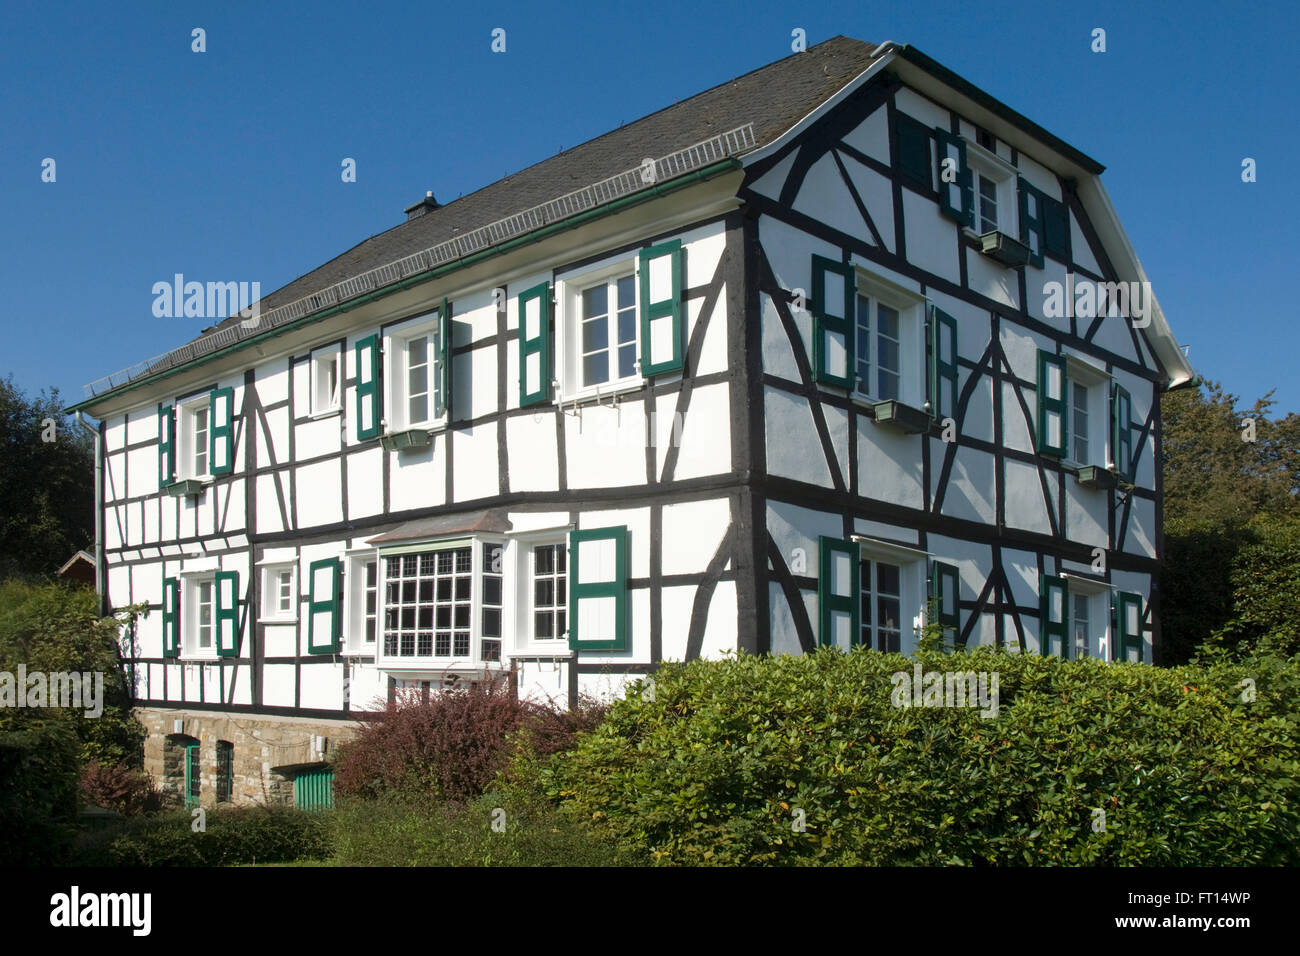 Deutschland, Renania settentrionale-Vestfalia, Kürten Rheinisch-Bergischen im Kreis, Pfarrhaus, zweigeschossiges Fachwerkhaus Foto Stock